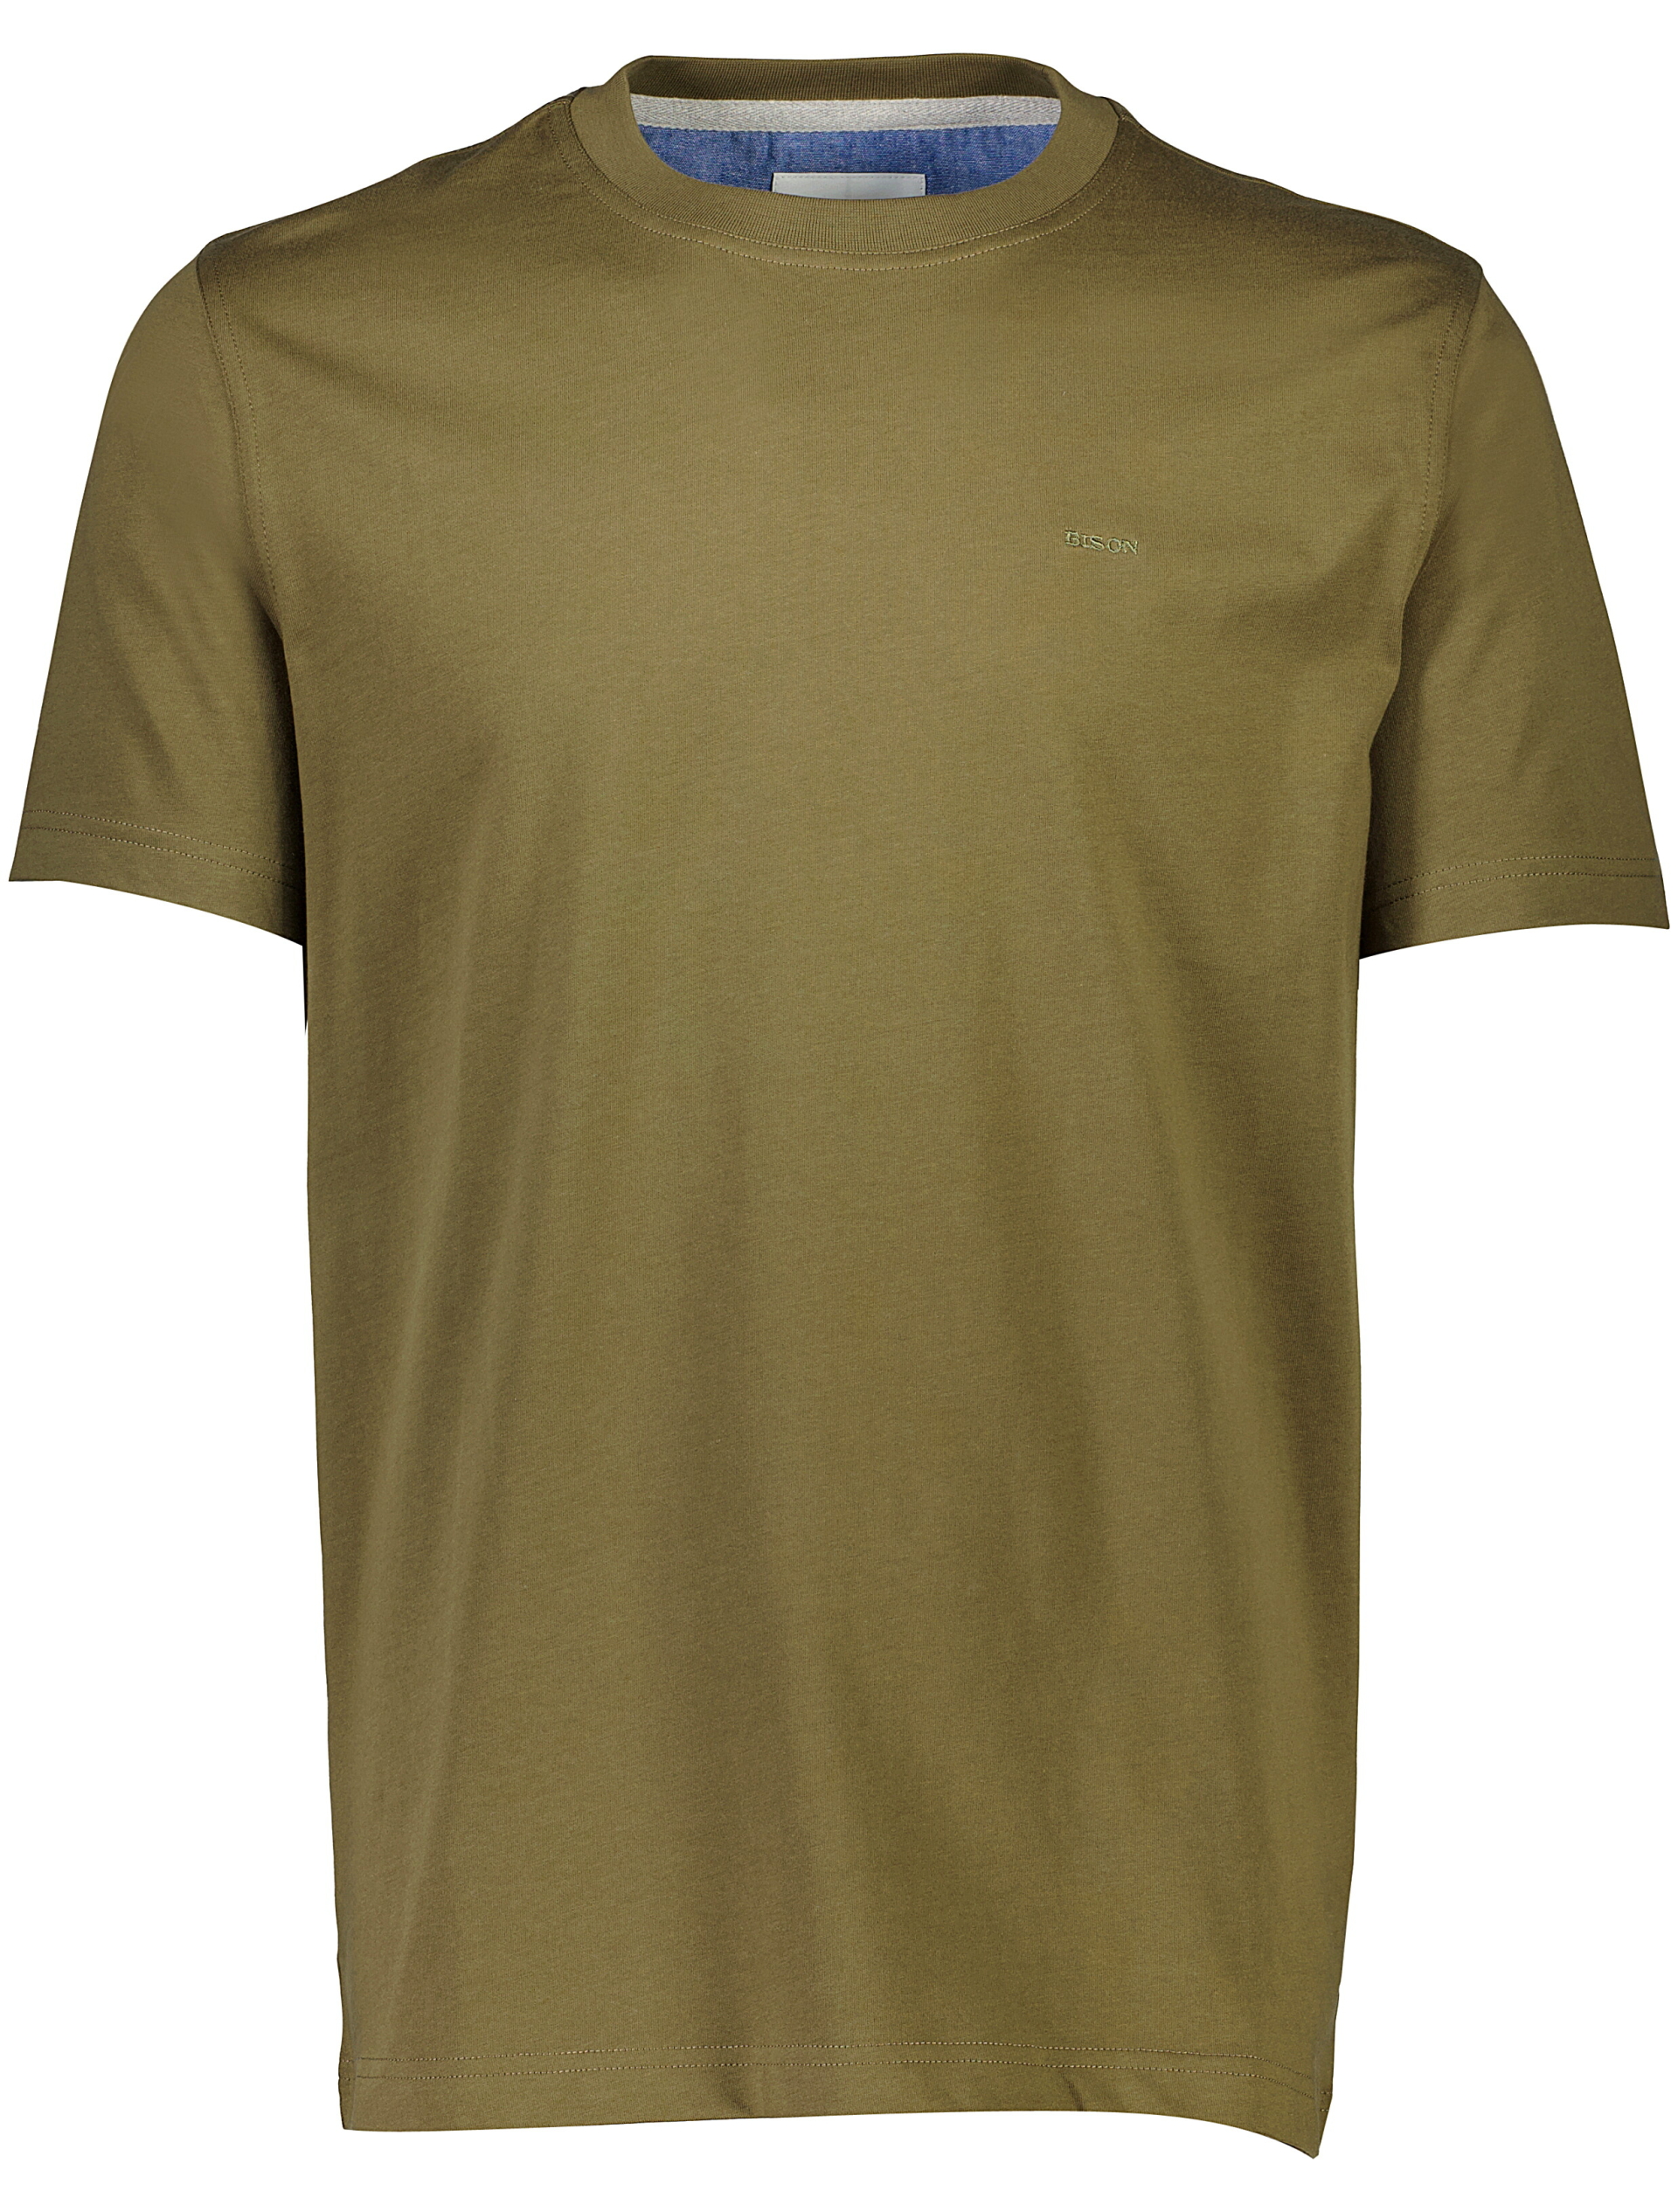 Bison T-shirt grøn / army leaf